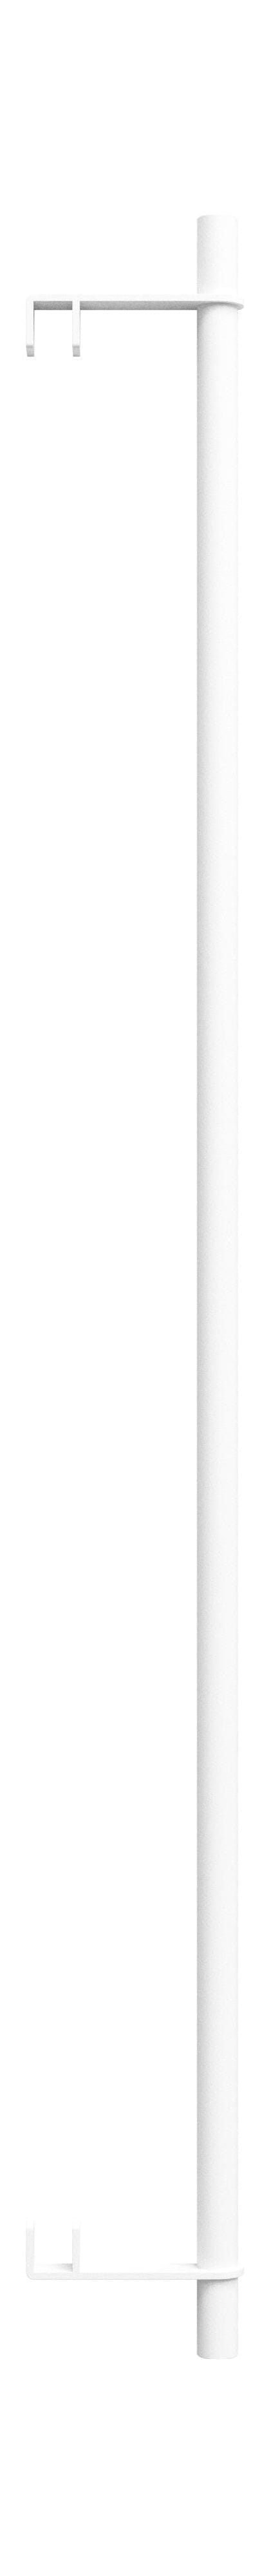 Moebe Rekken systeem/muurplanken kledingbar 85 cm, wit